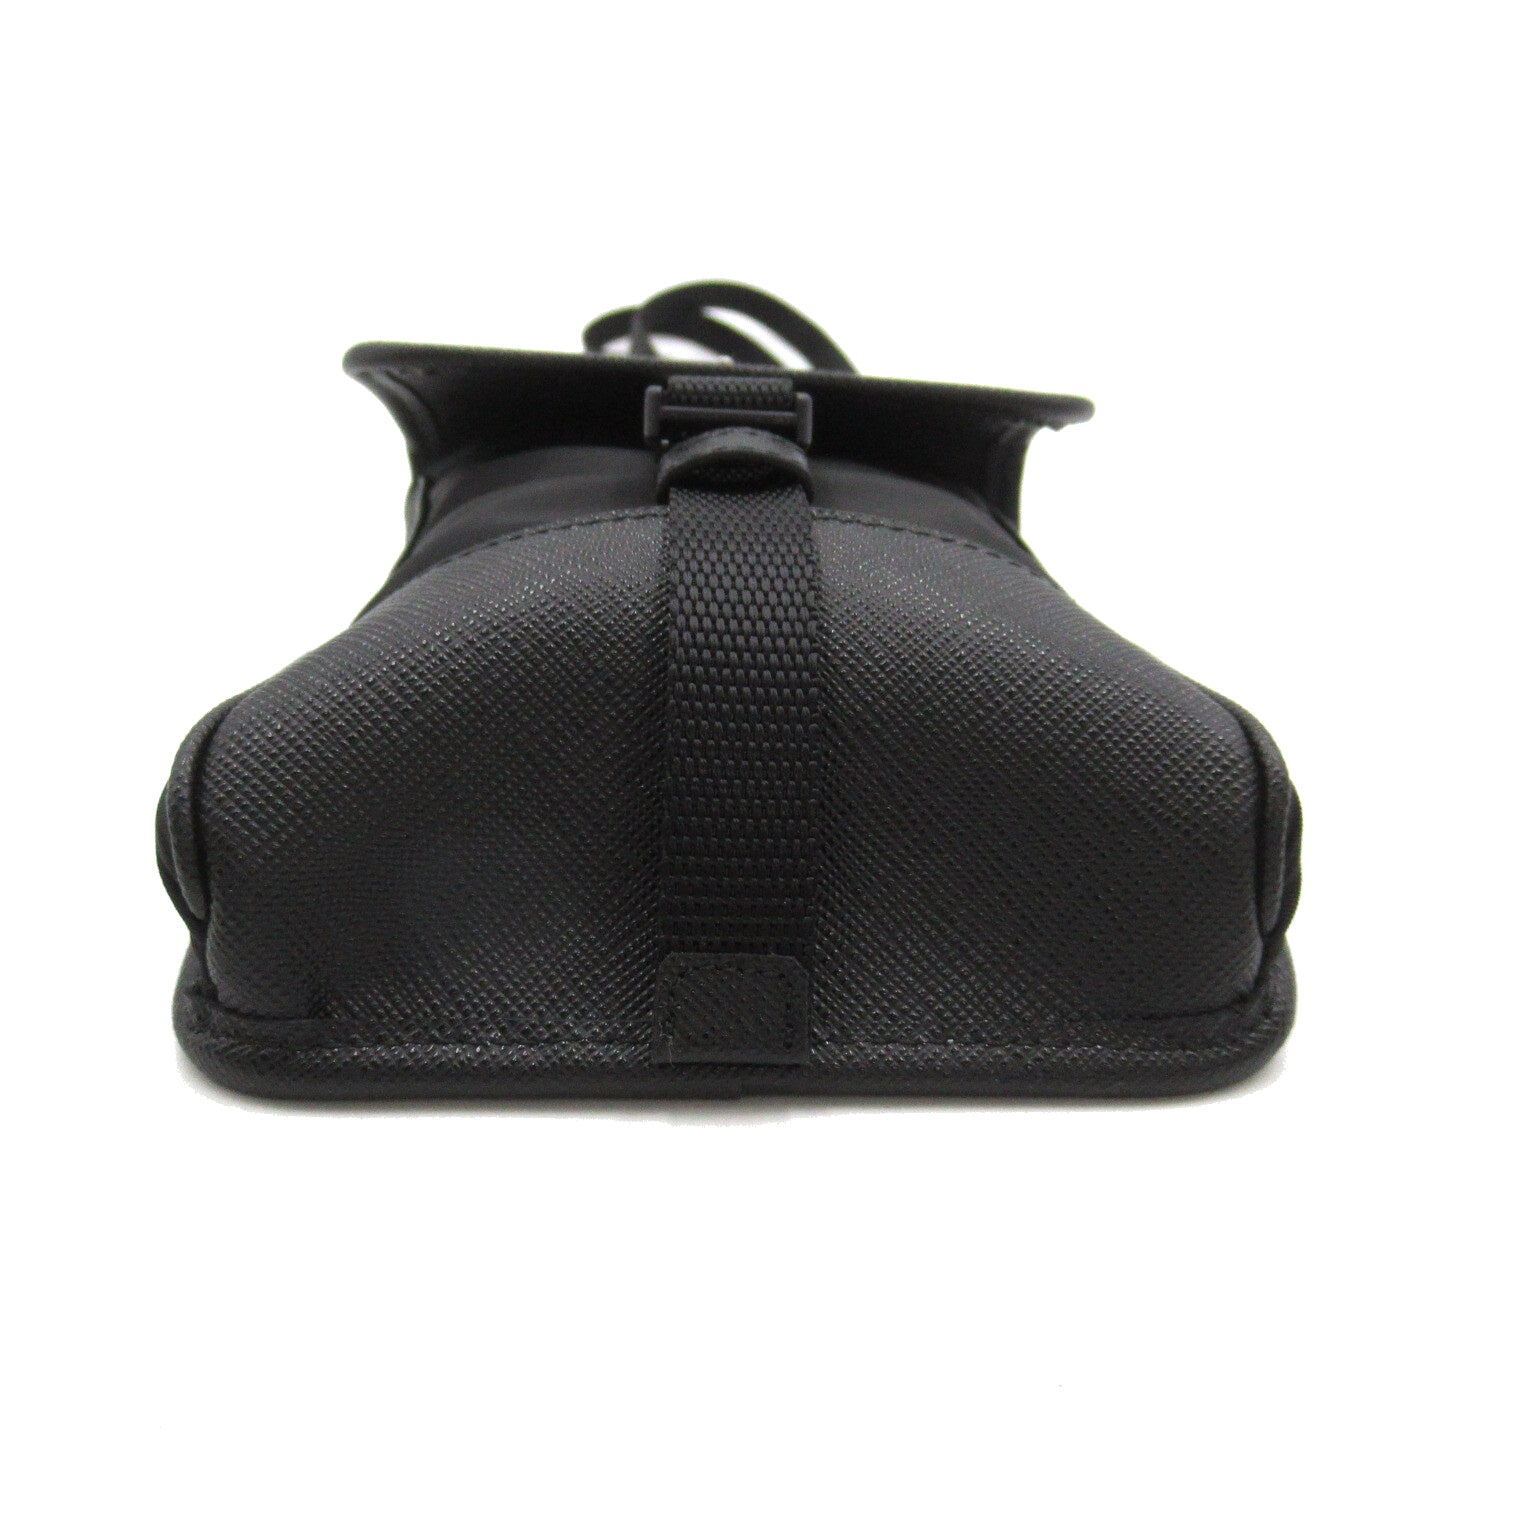 Prada Prada Shoulder Bag Shoulder Bag Nylon Leather   Black 2ZH1092DMHF0002